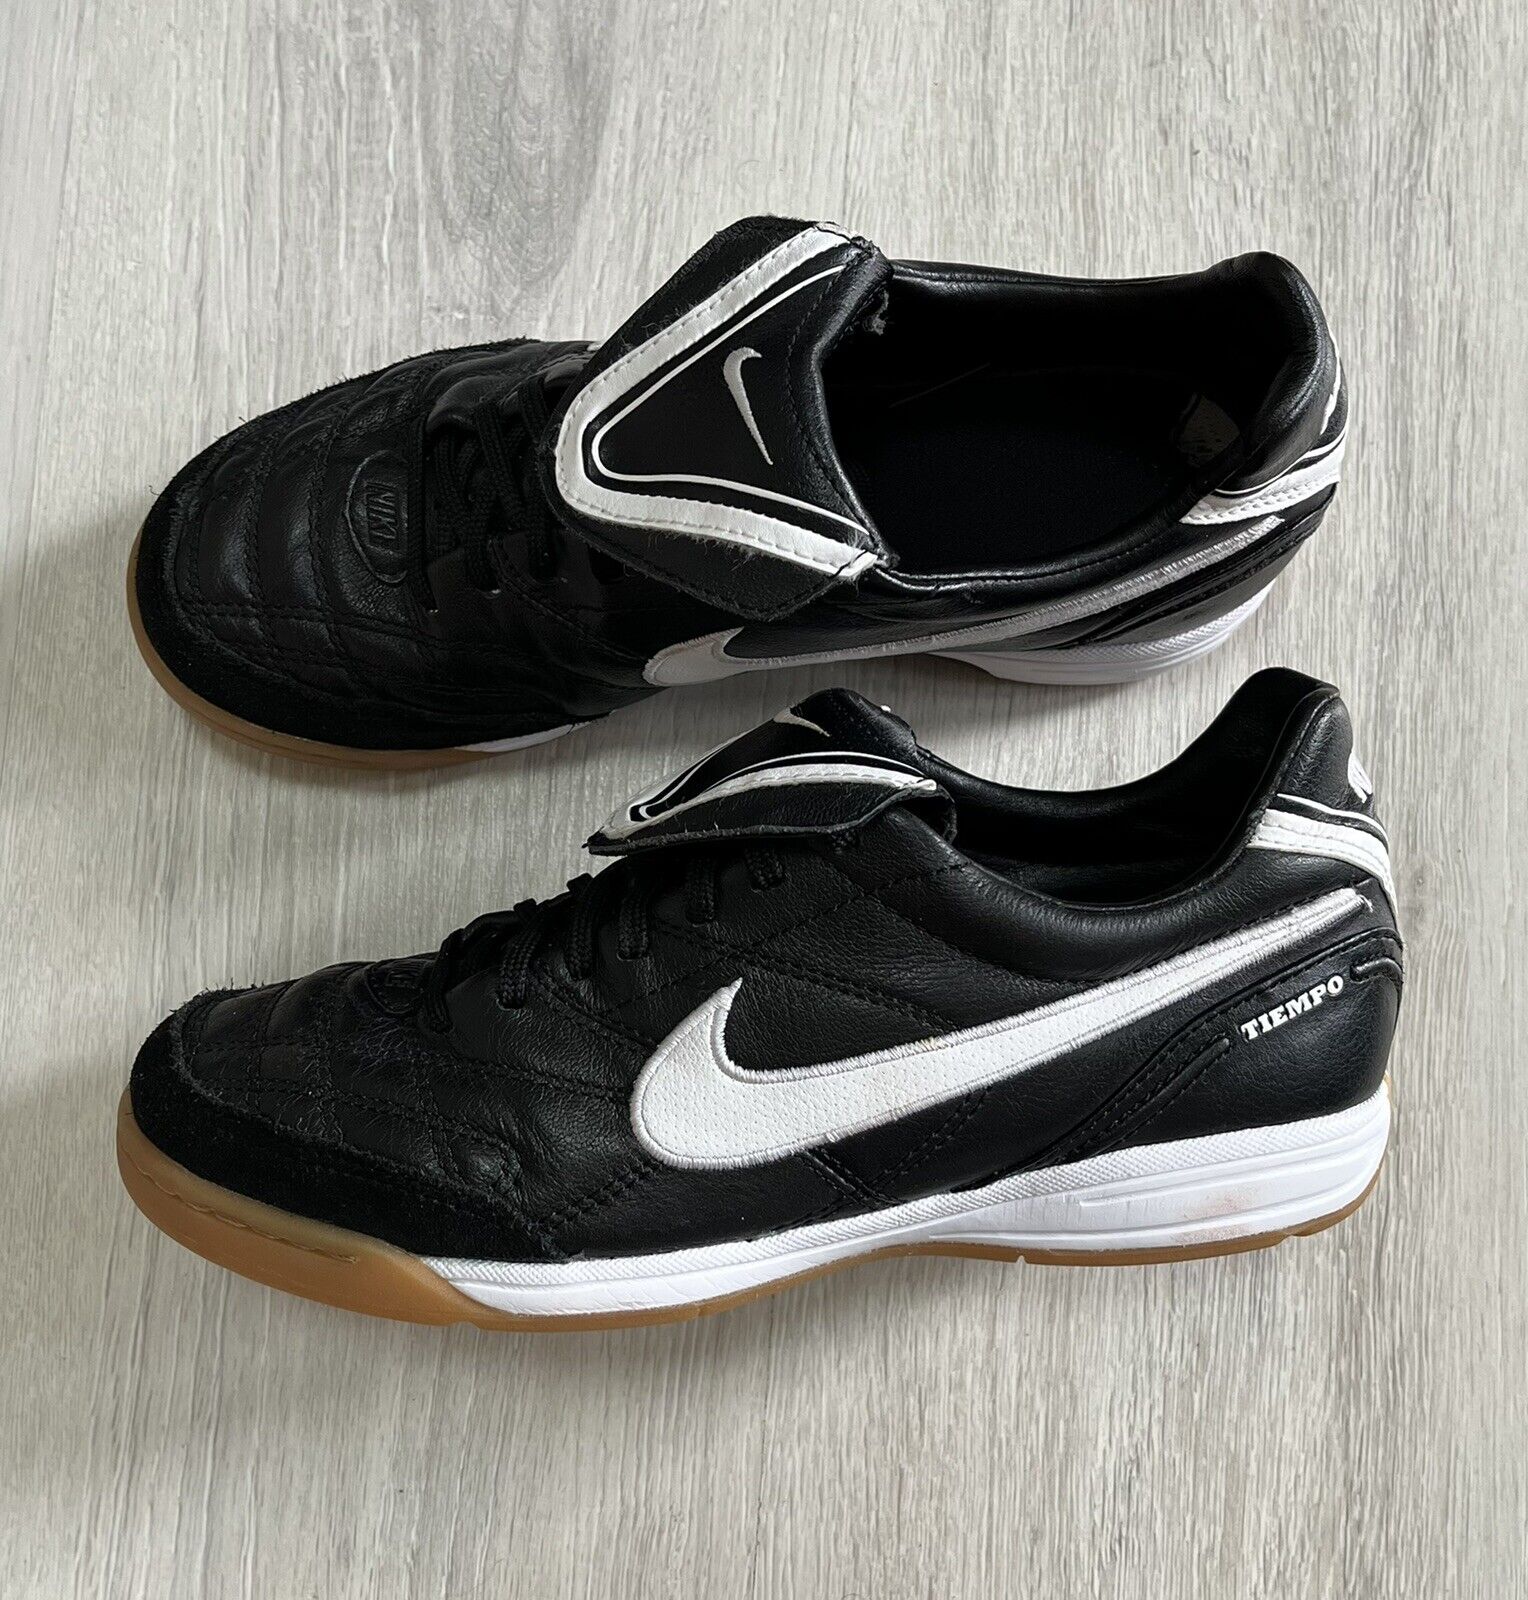 Nike Tiempo Mystic III IC Indoor 2009 Football/Soccer/Futsal Shoes | eBay